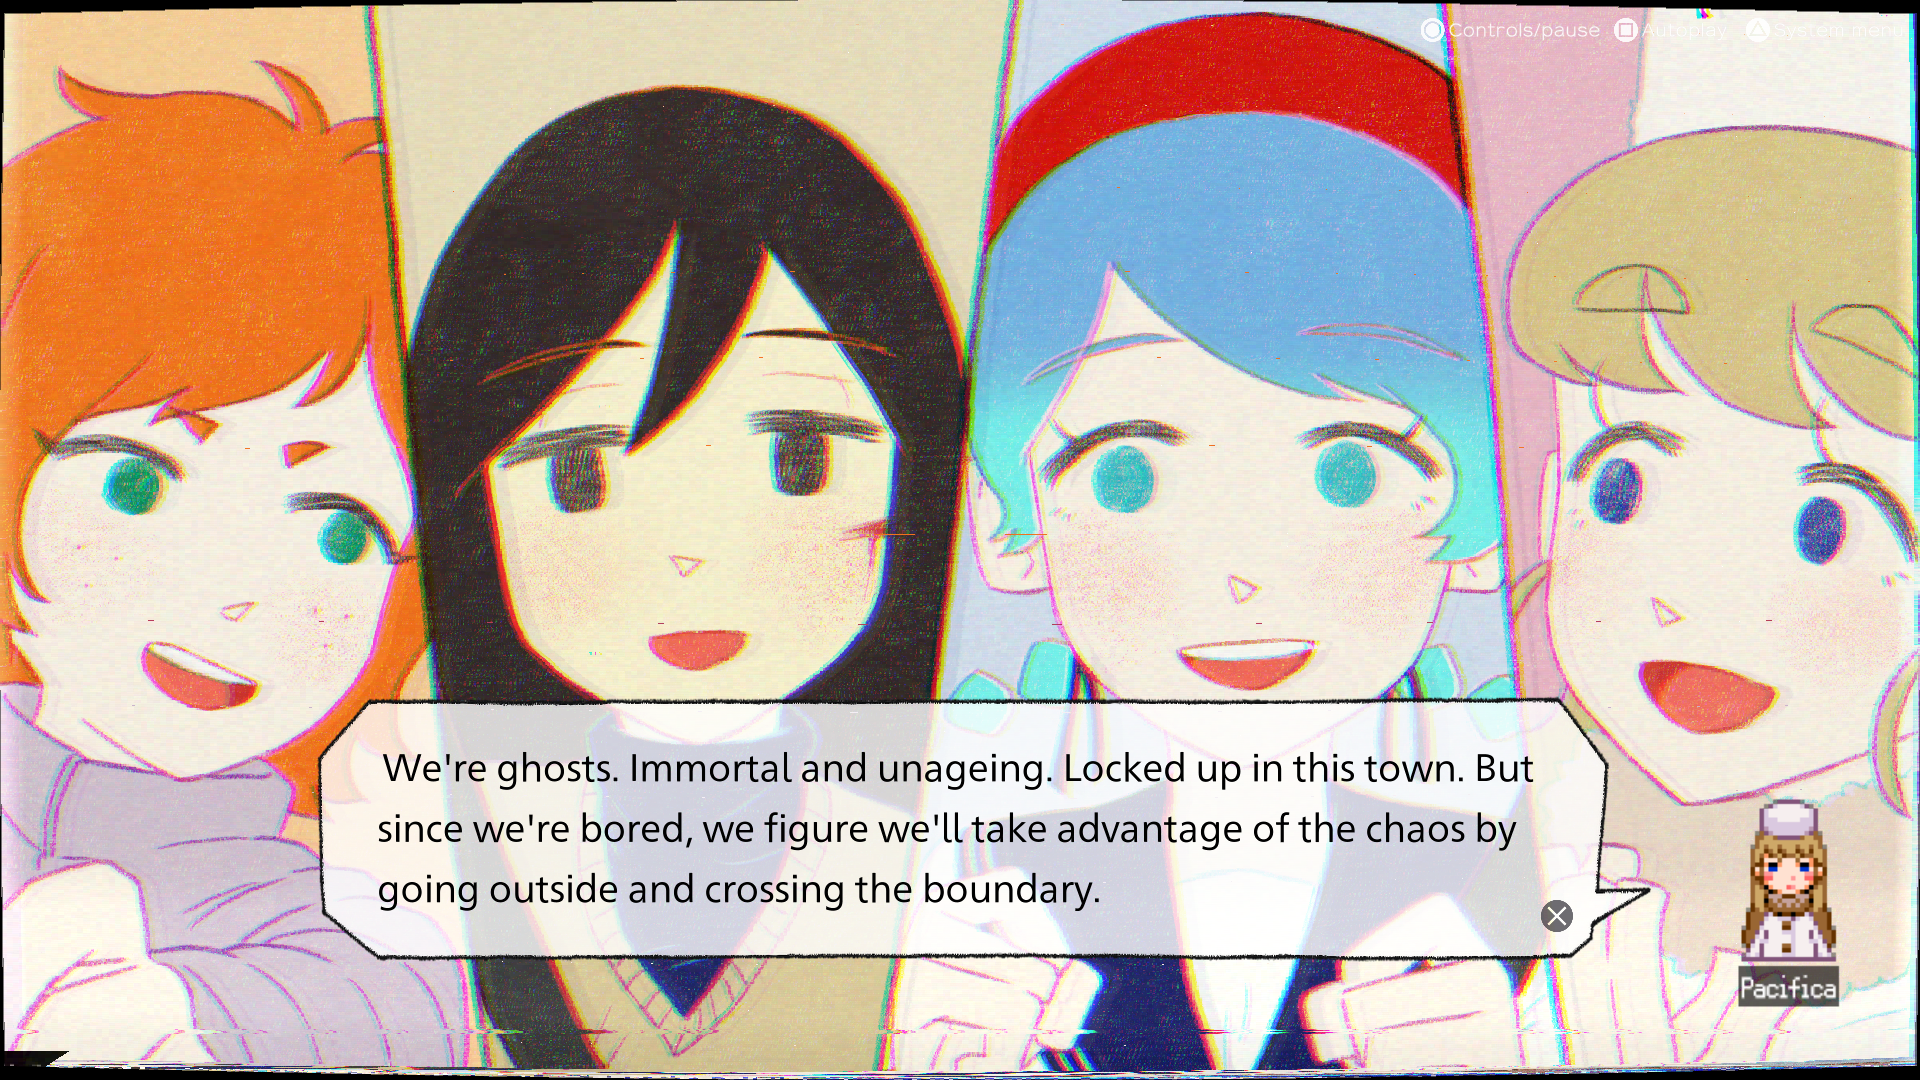 Imagem das personagens Sayoko, Anya, Pacifica e Yoru de ghostpia